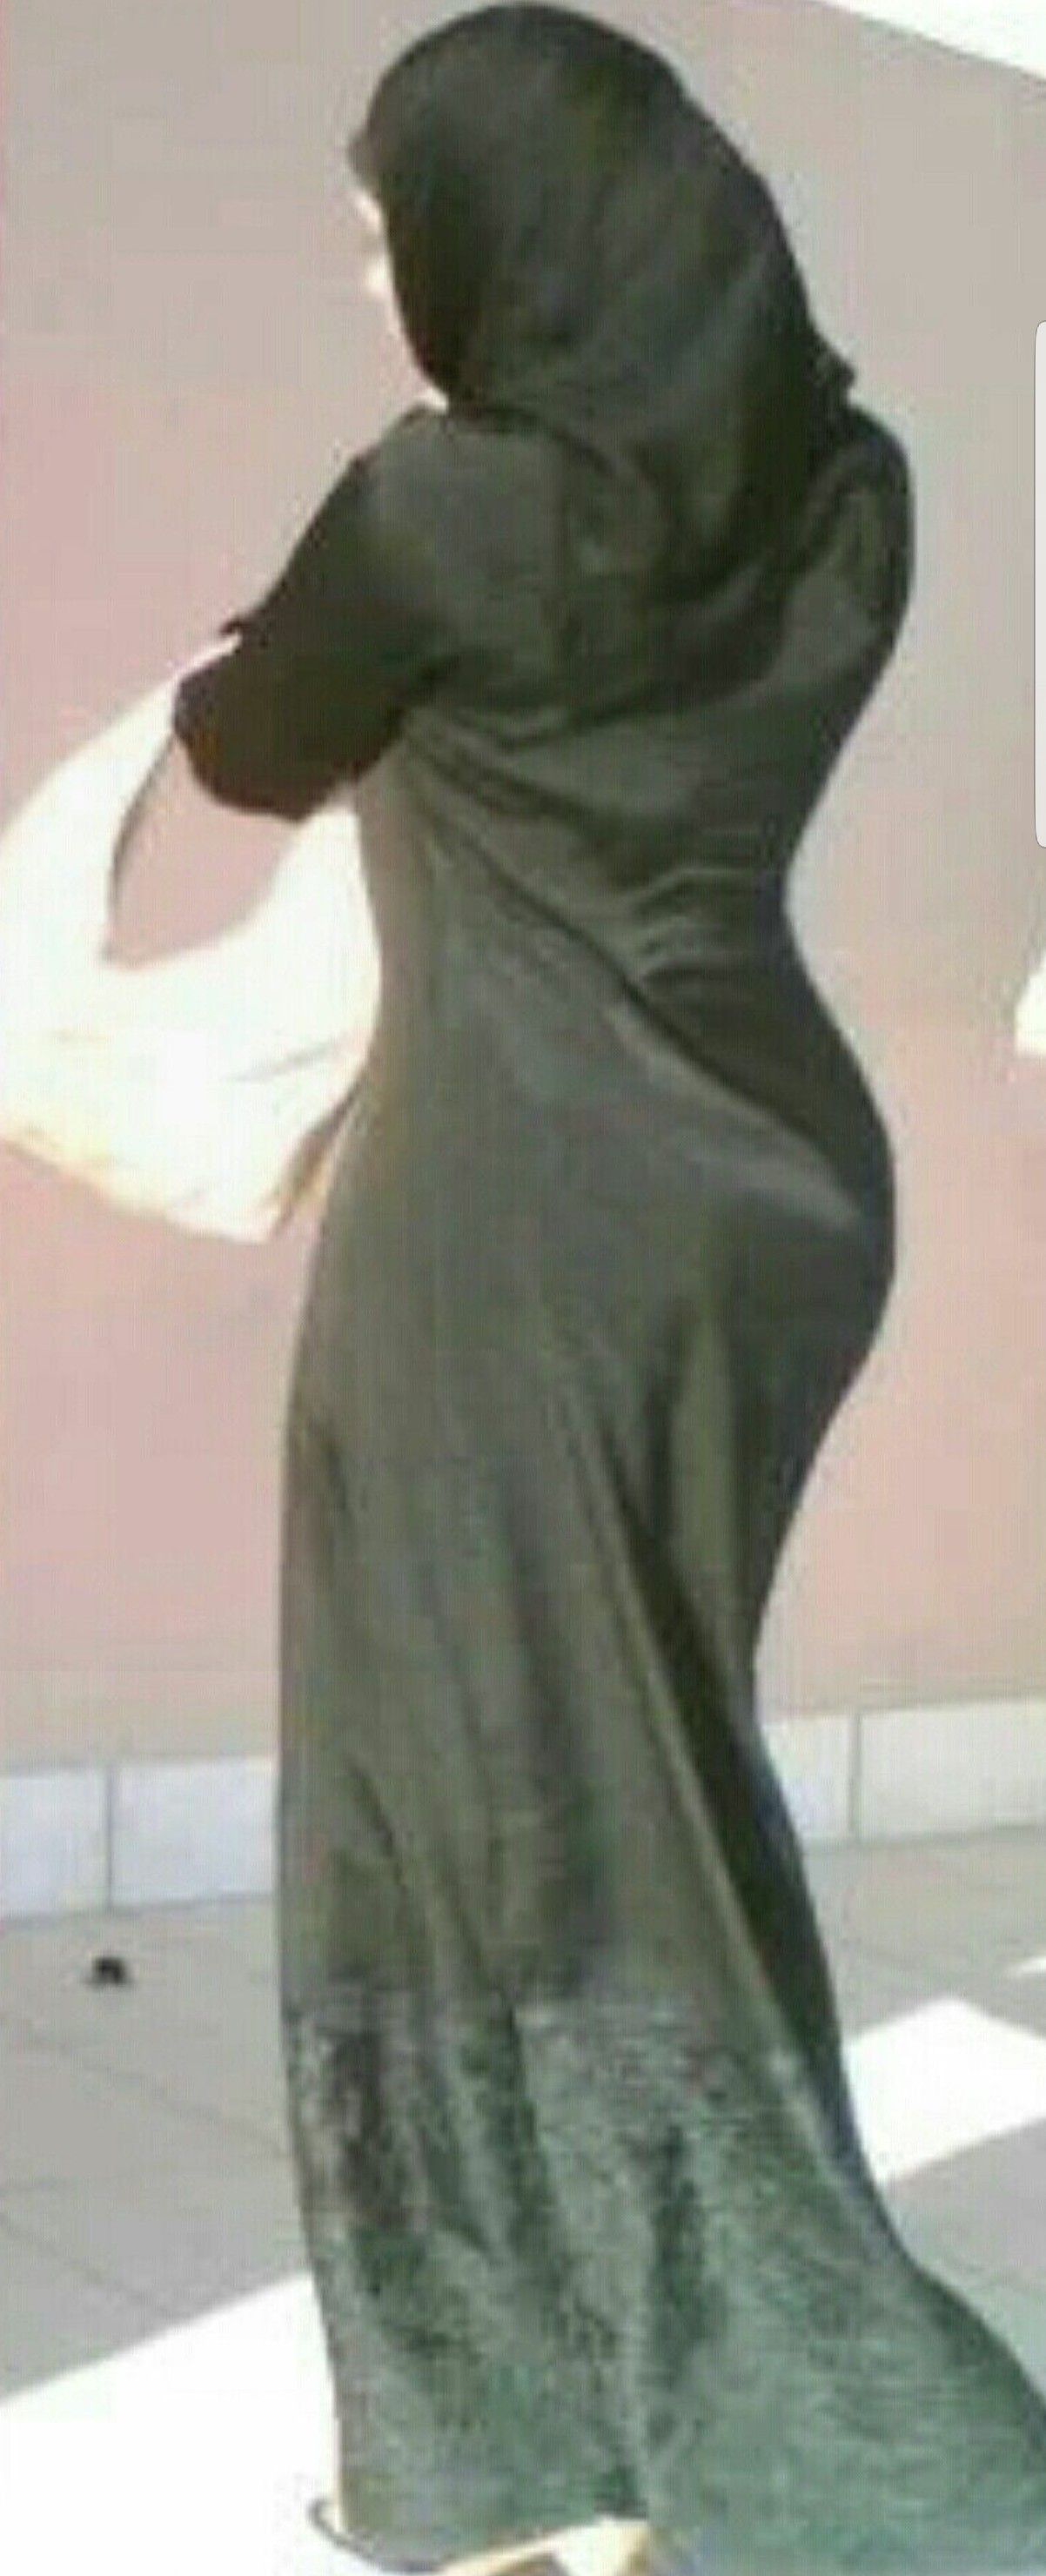 Arab hot hijab ass